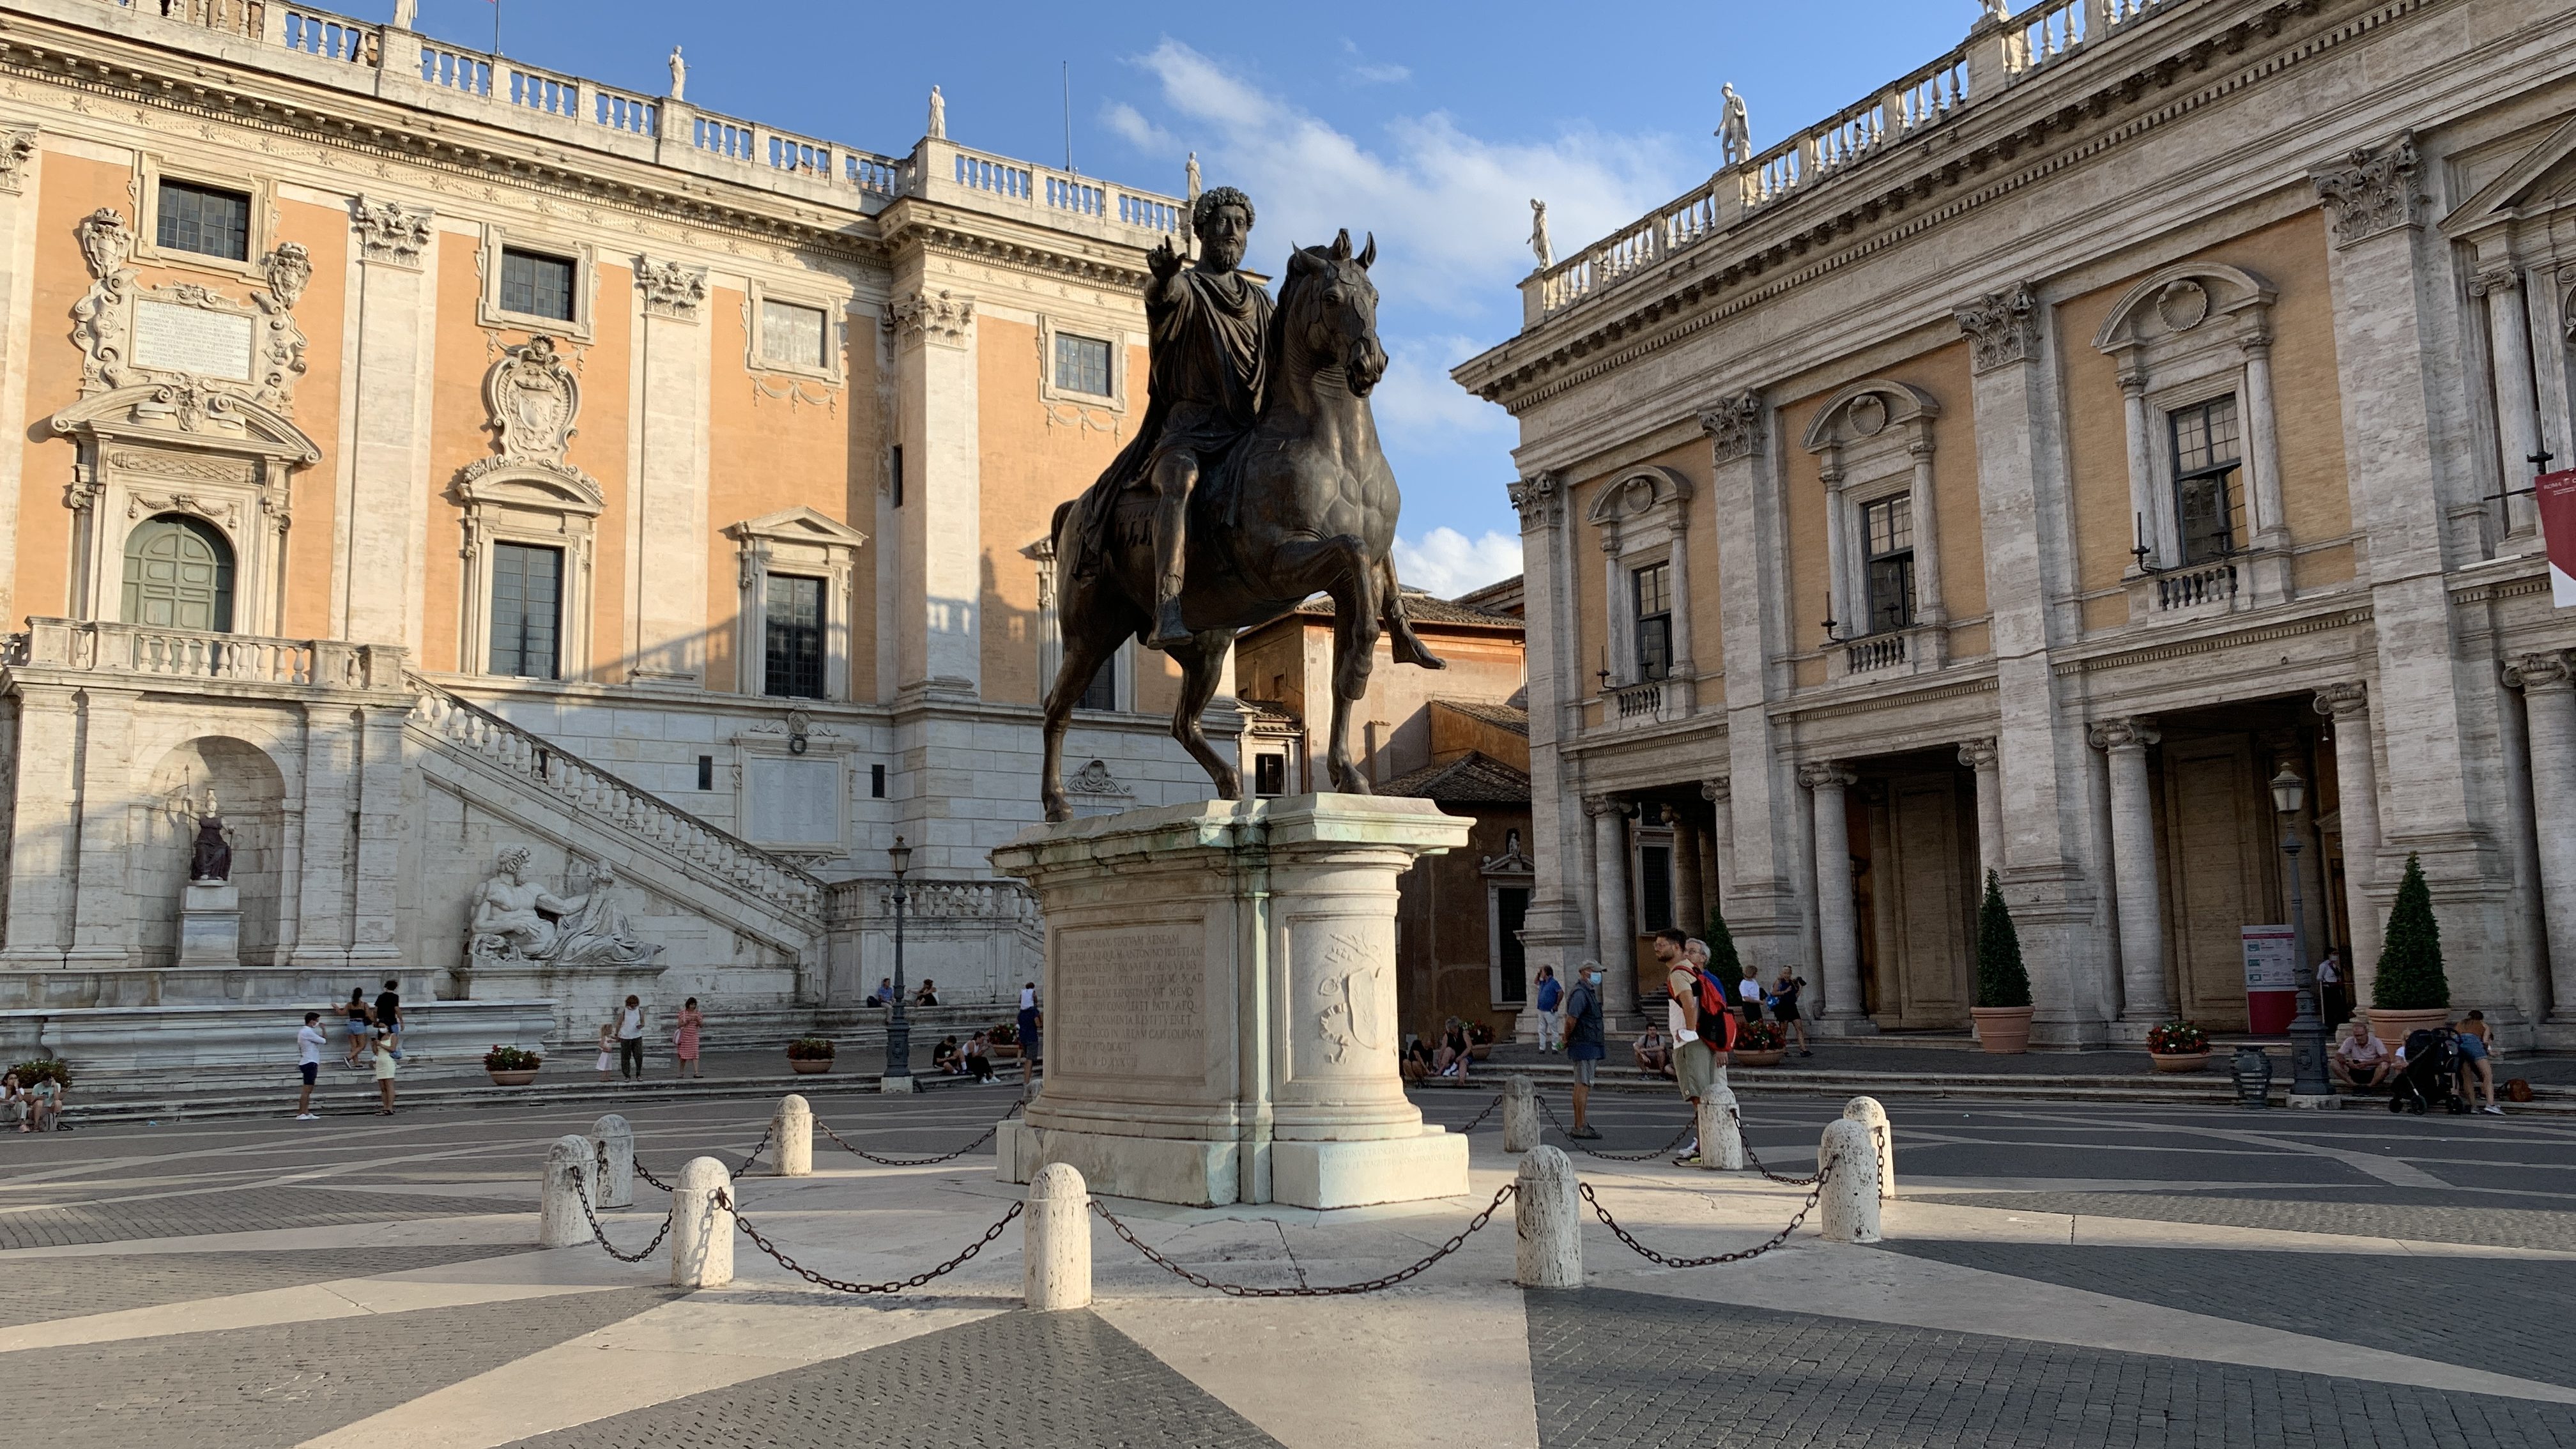 A statue of Marcus Aurelius in a Roman plaza.